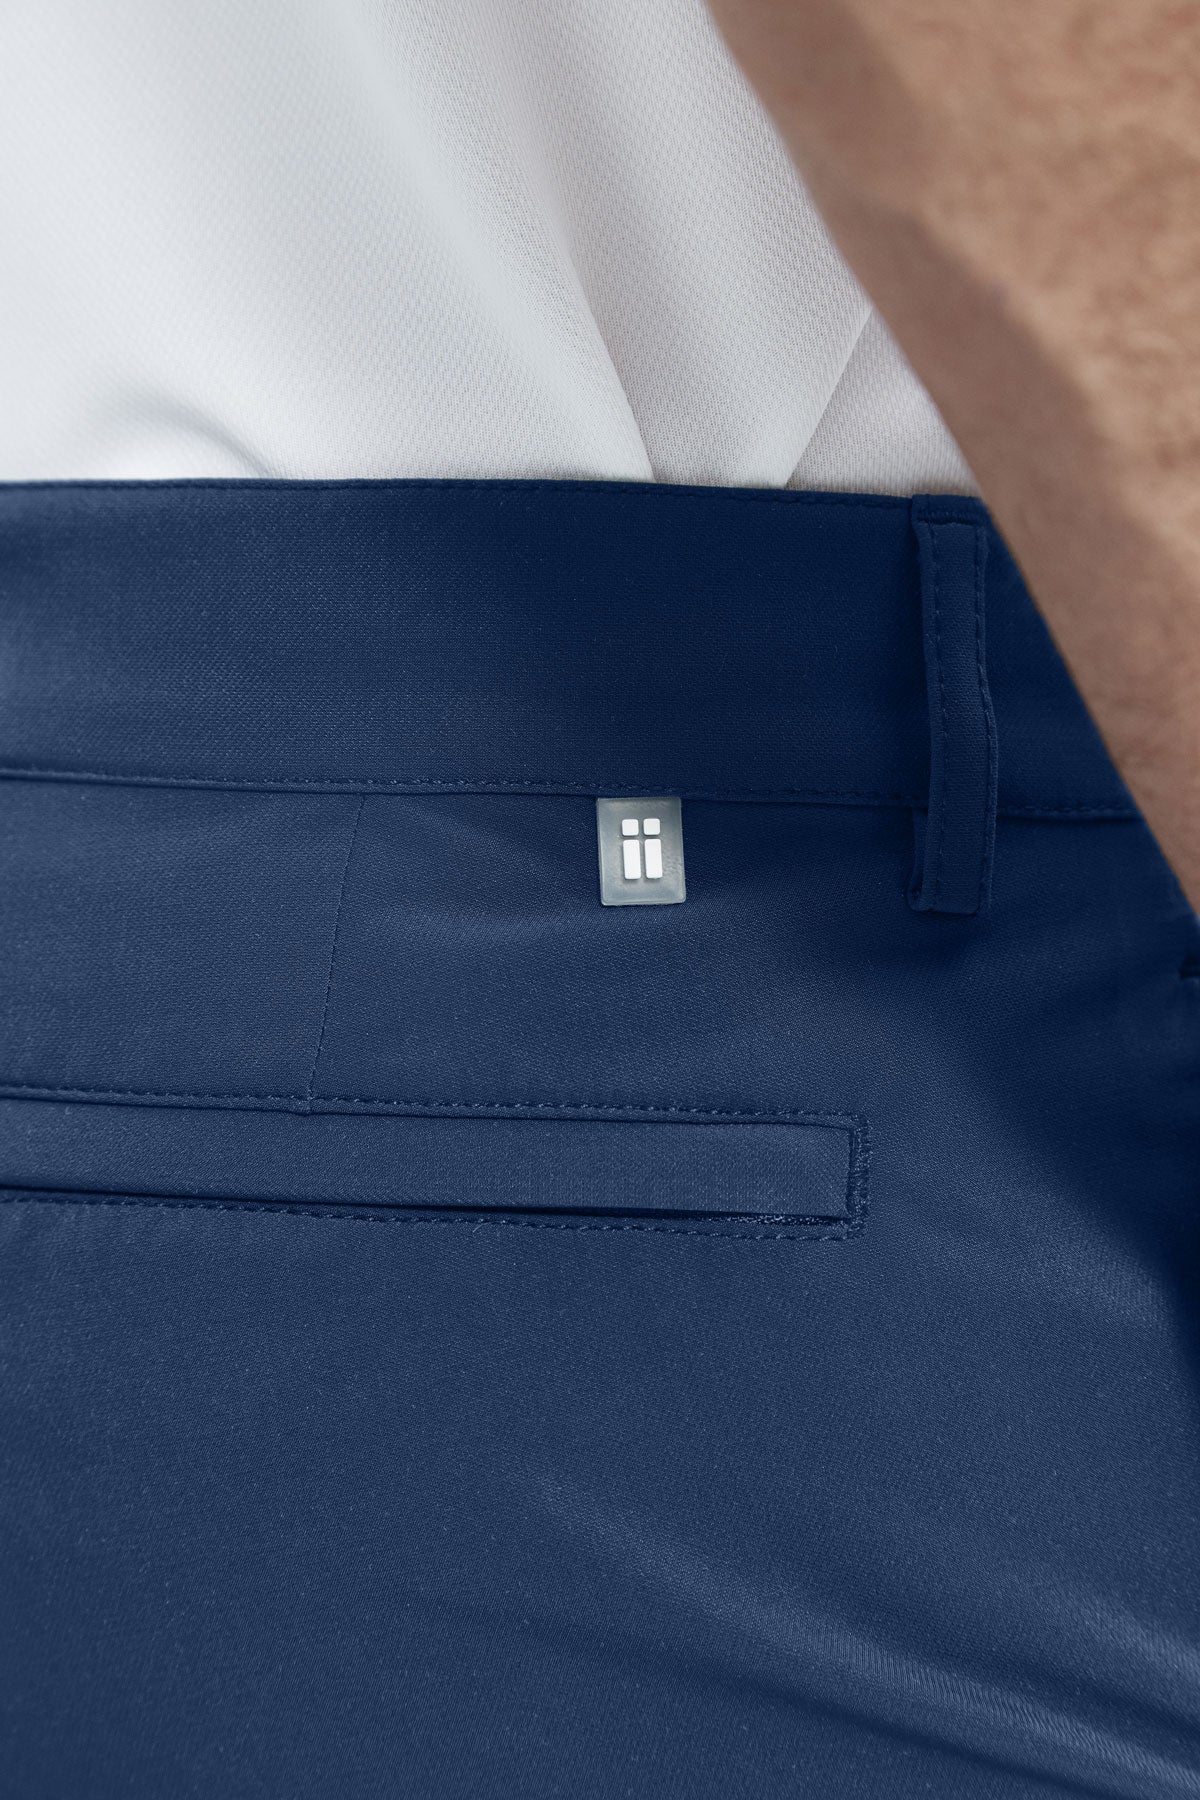 Pantalón para hombre azul marino: Pantalón chino slim azul marino para hombre con tecnología termorreguladora Coolmax. Foto detalle